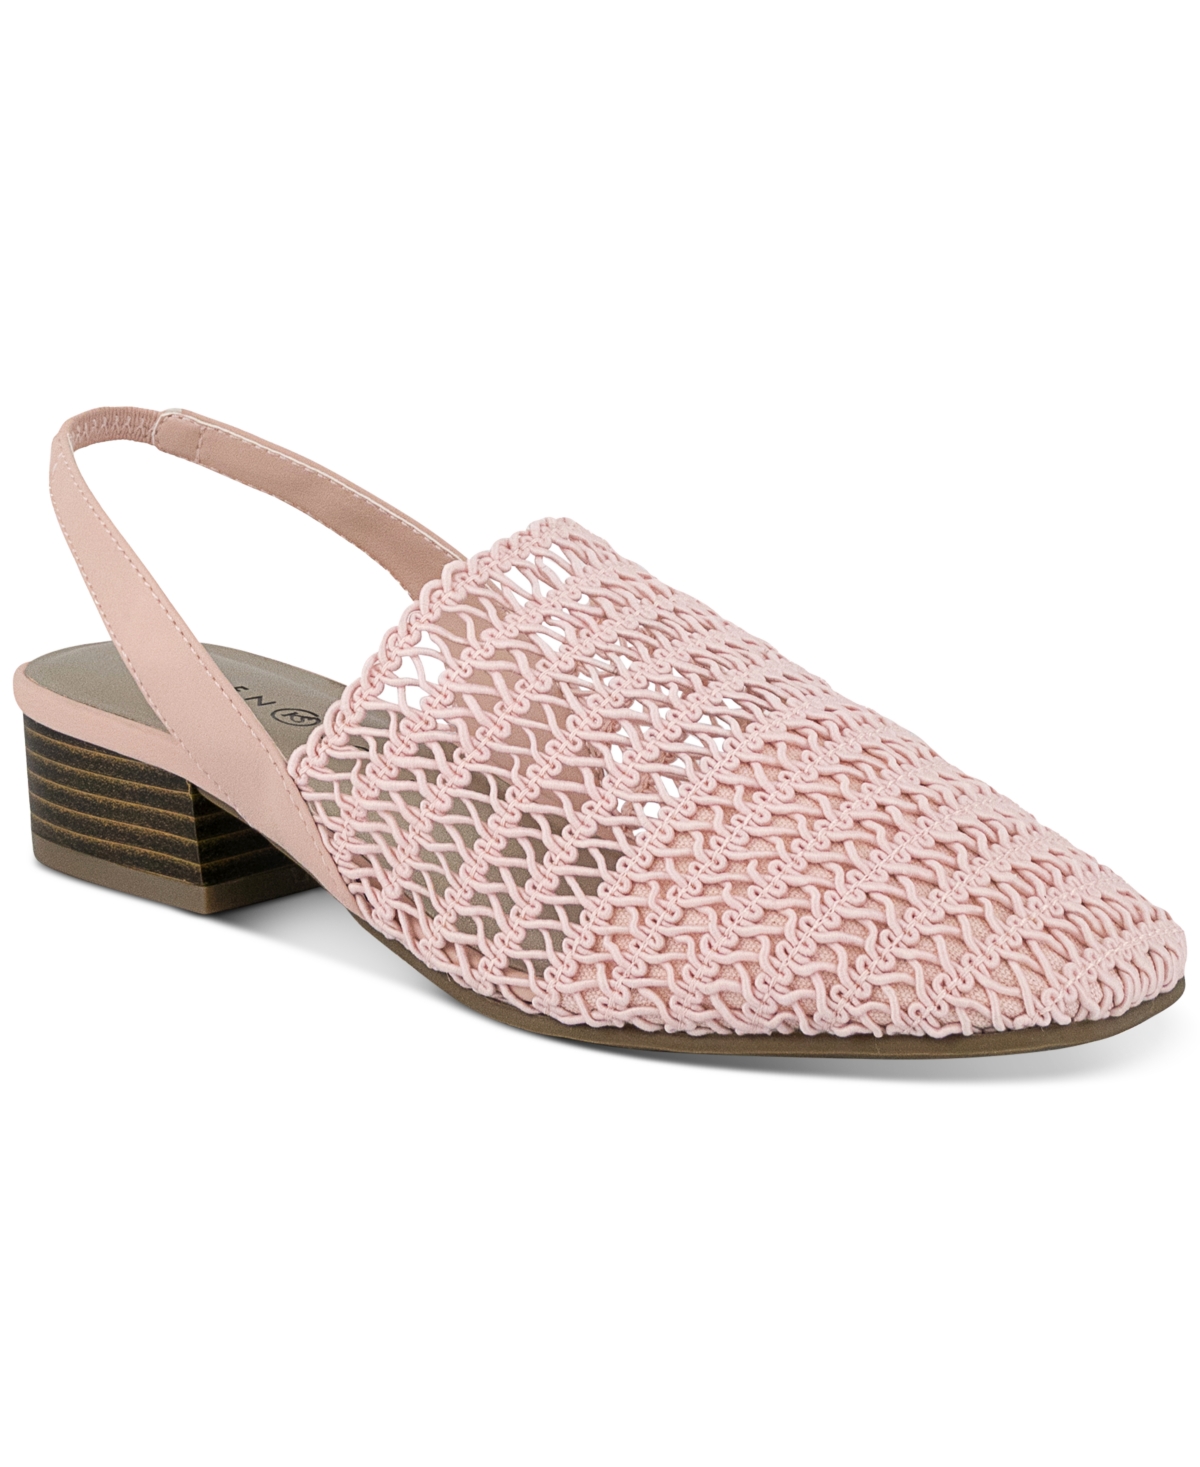 Karen Scott Carolton Slingback Sandals, Created for Macy's Women's Shoes